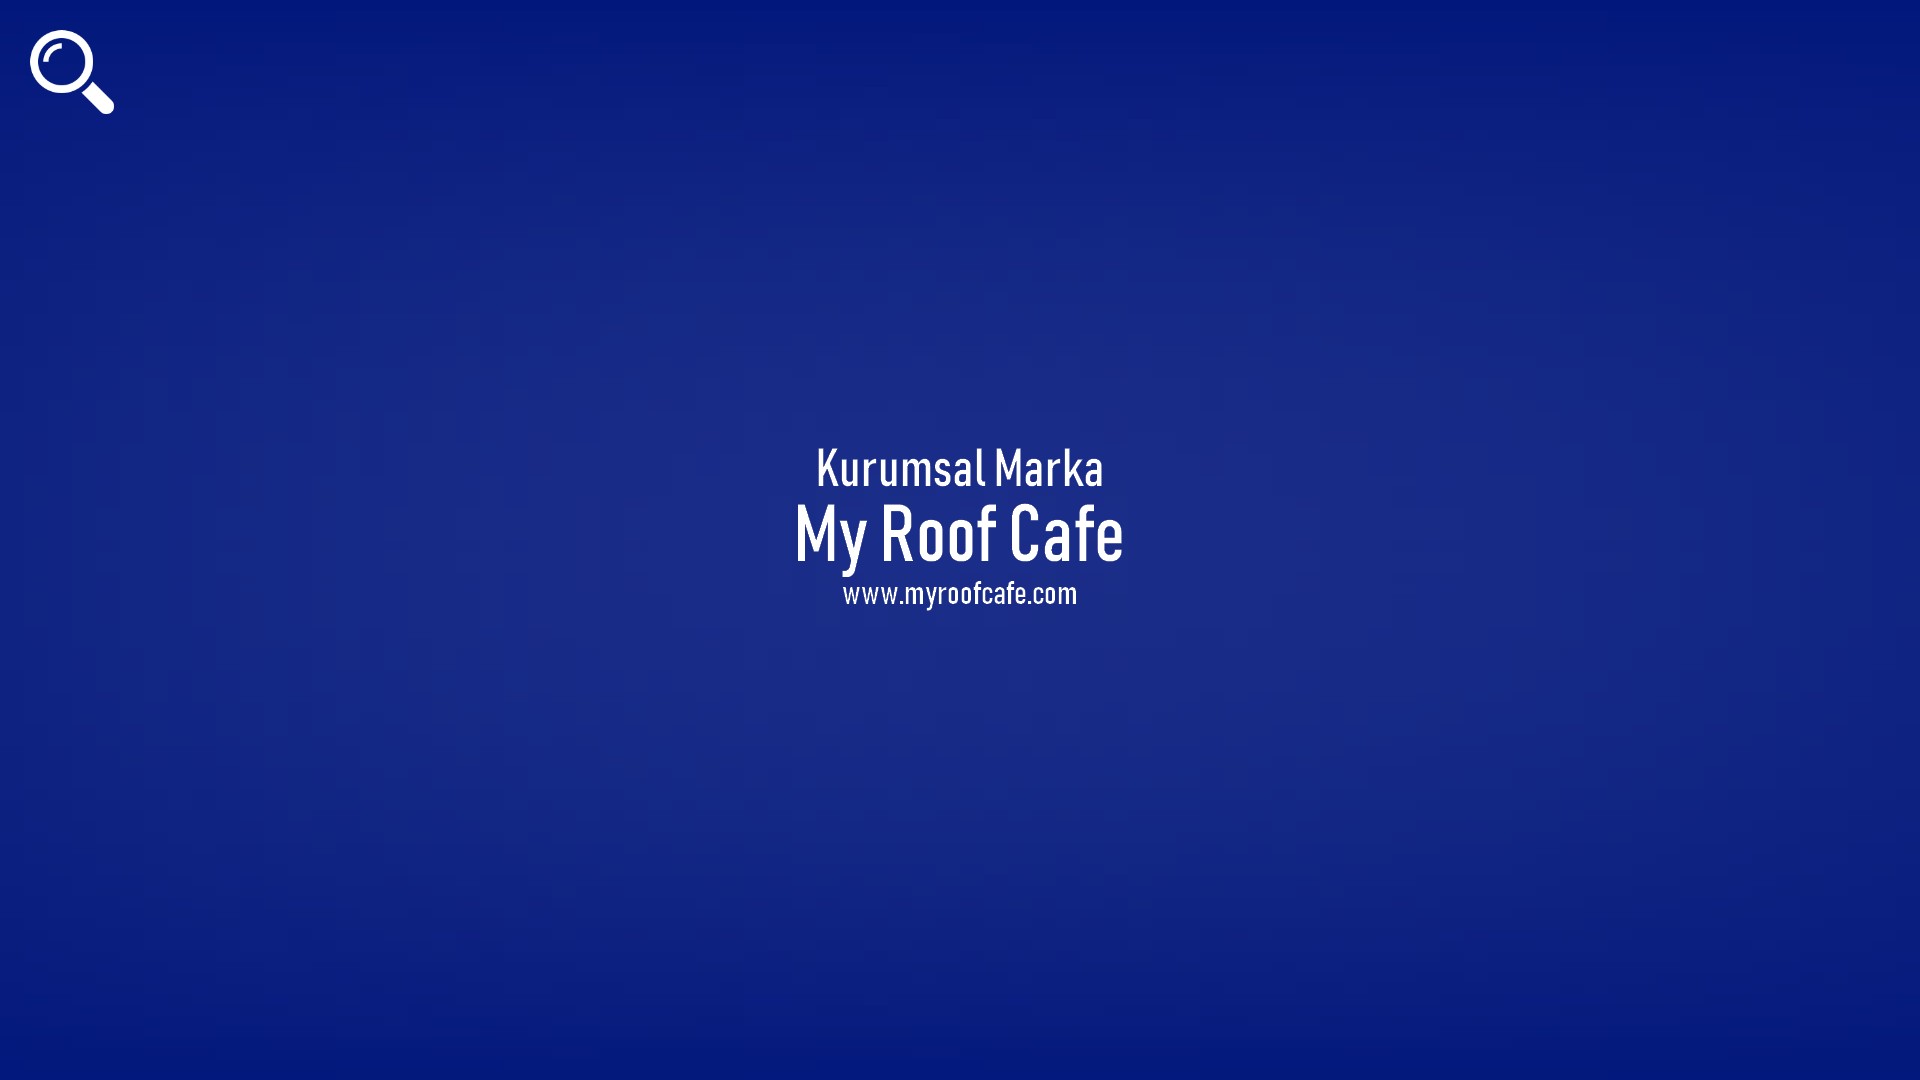 My Roof Cafe başlıklı içeriğin resmi